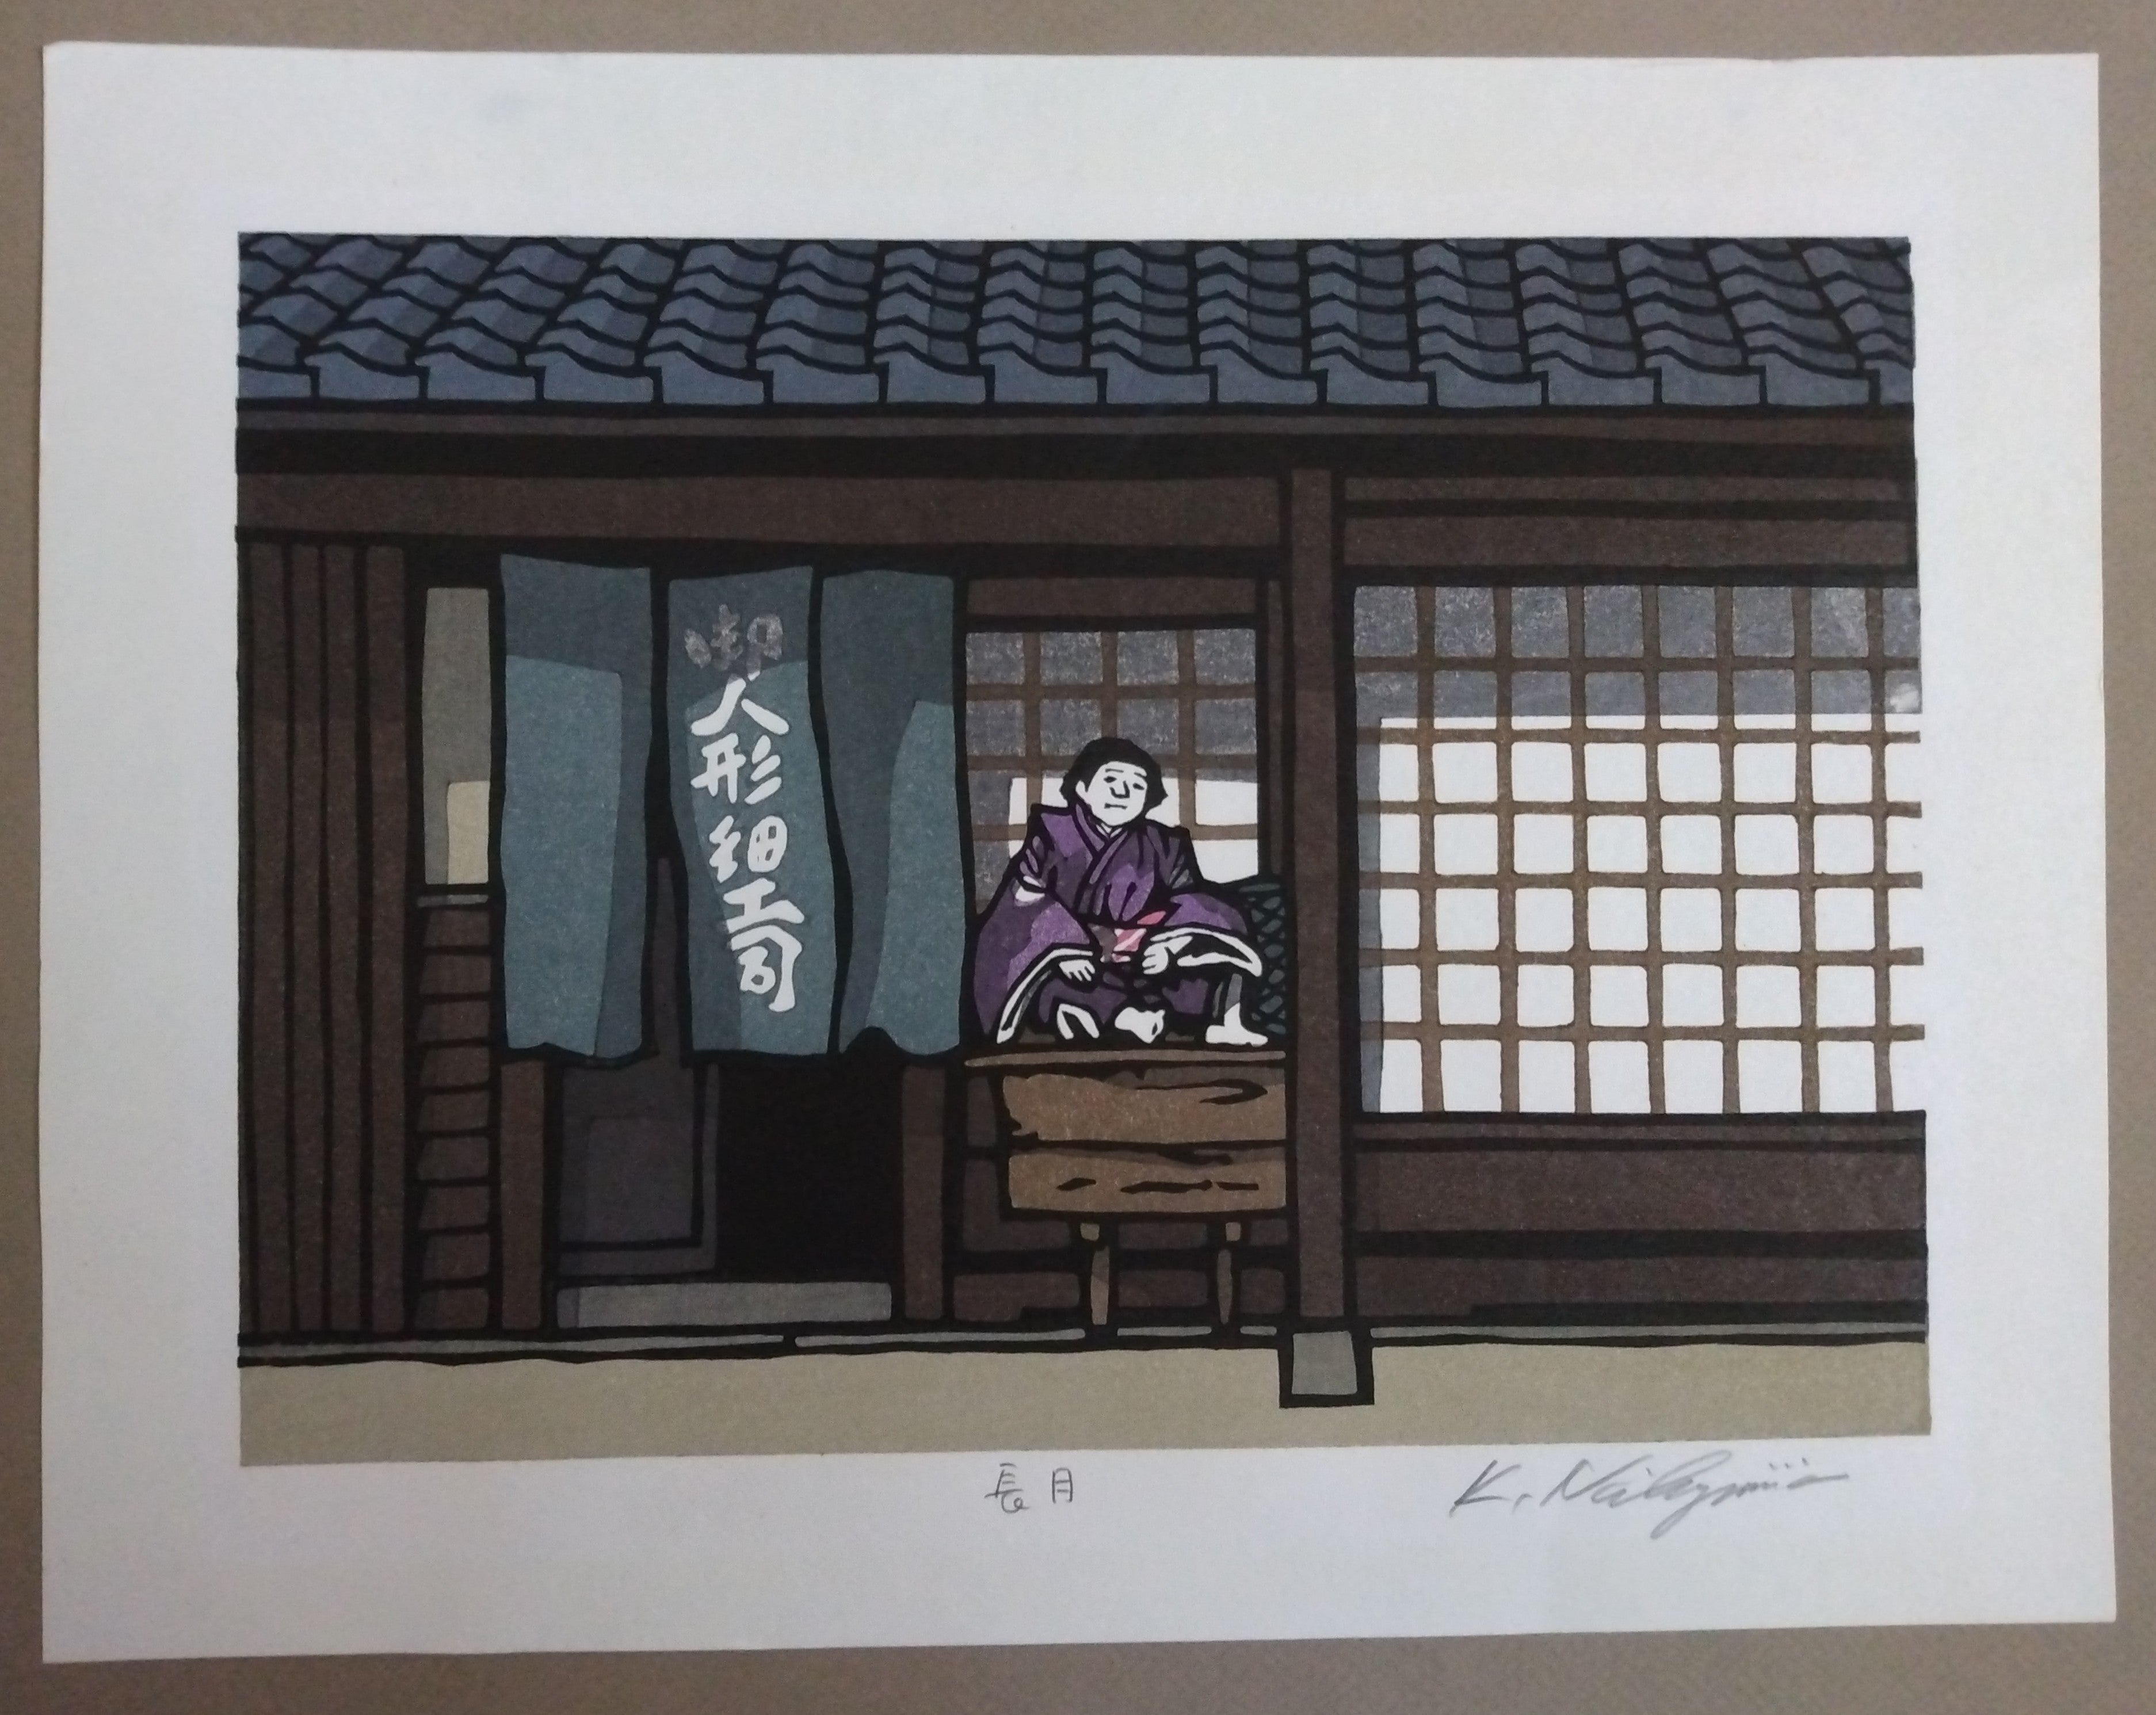 Woodblock Print by Katsuyuki Nishijima, "Nagatsuki" (Long Month, September)